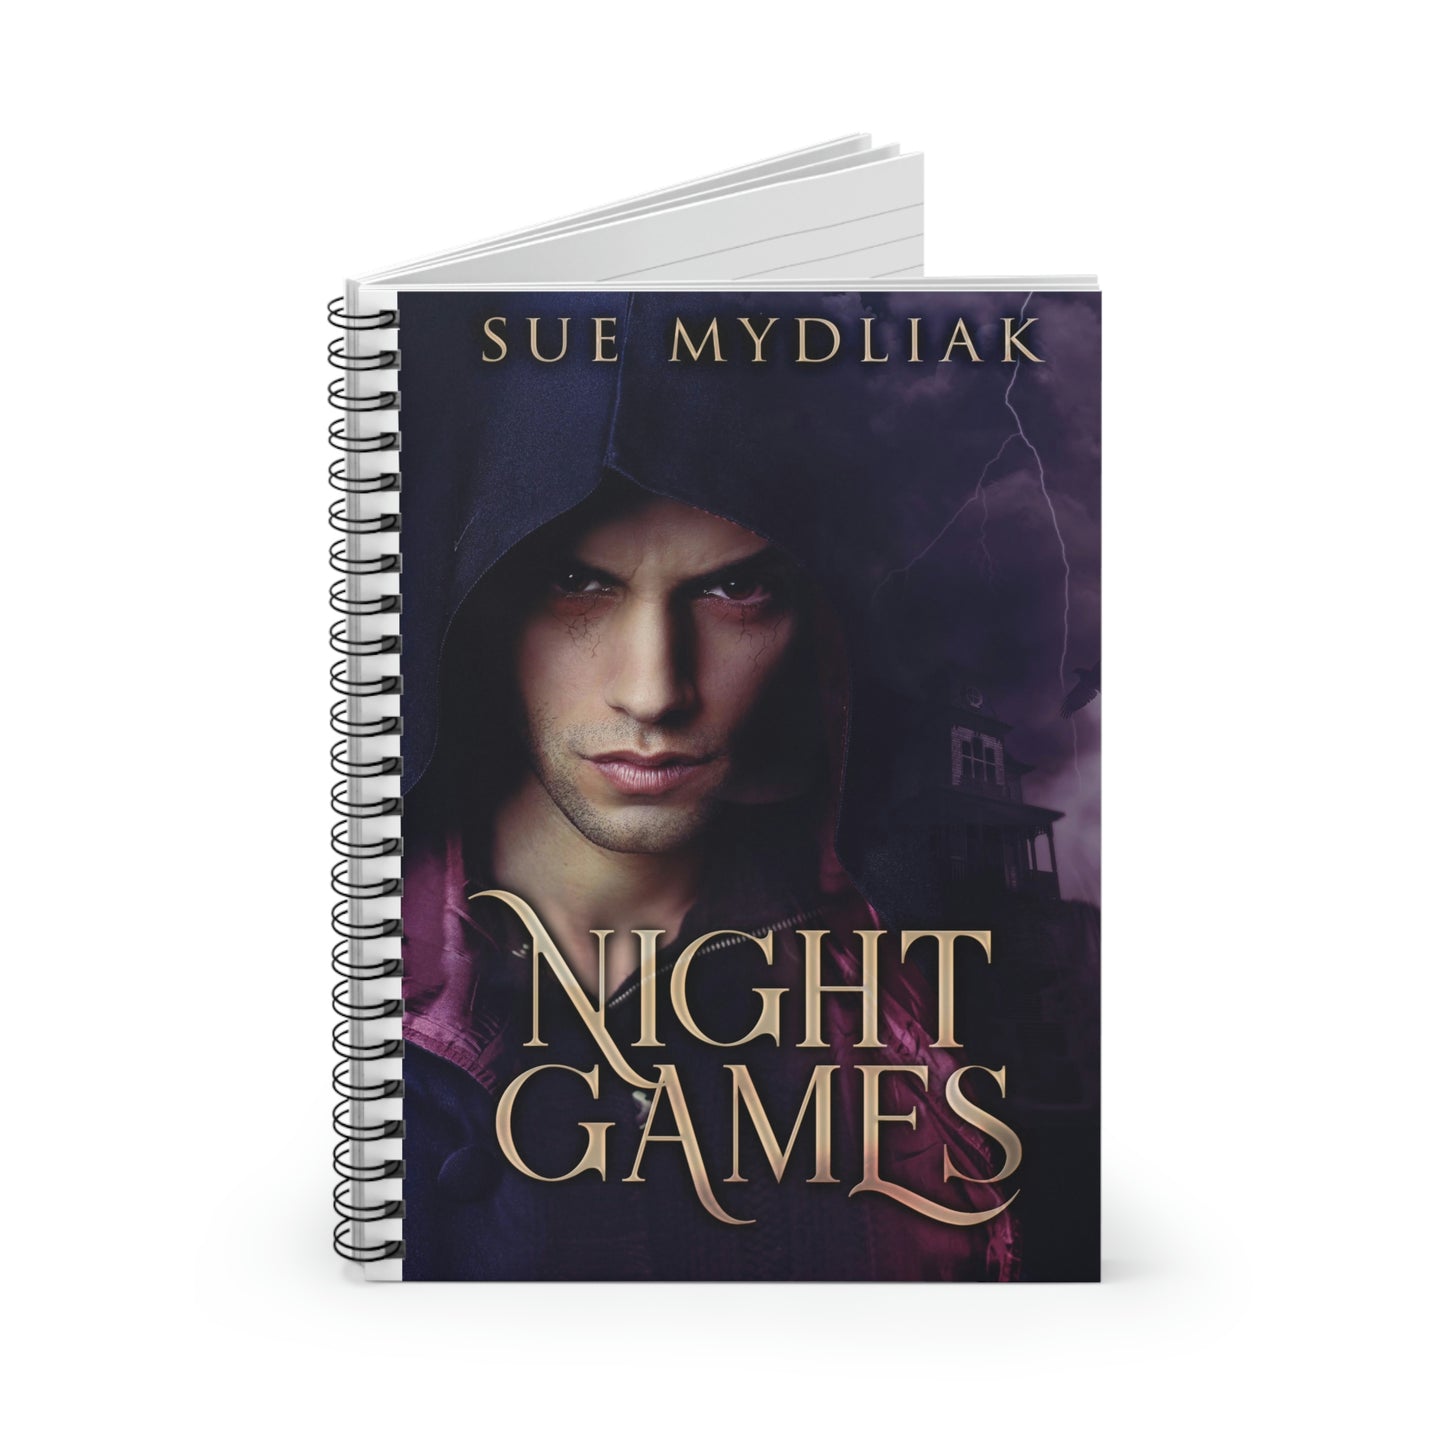 Night Games - Spiral Notebook